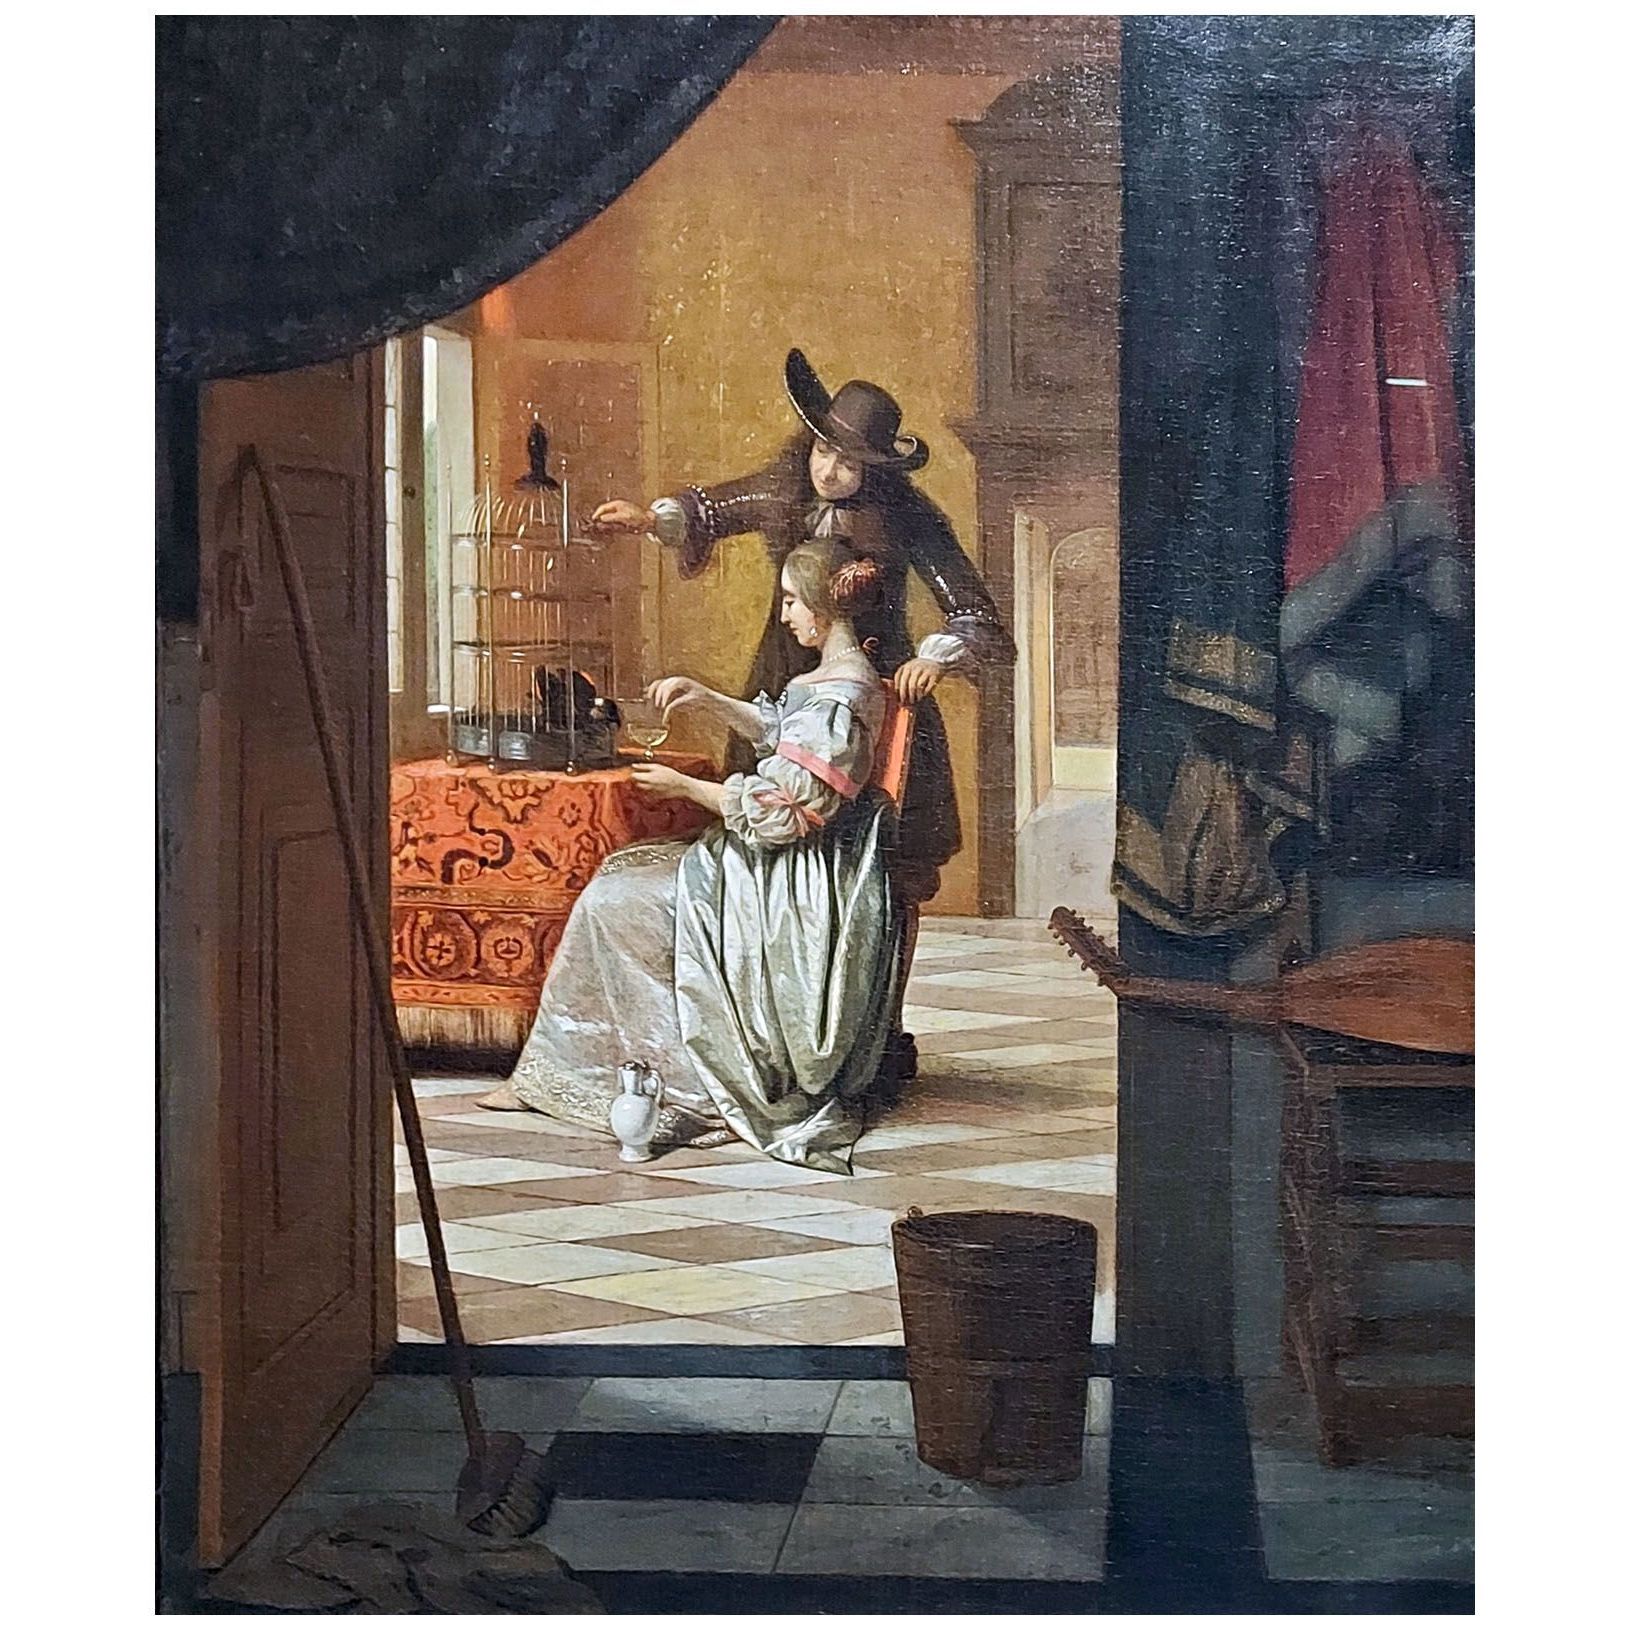 Pieter de Hooch. Man and Woman with a Parrot. 1675-1678. Gemaldegalerie Alte Meister Dresden